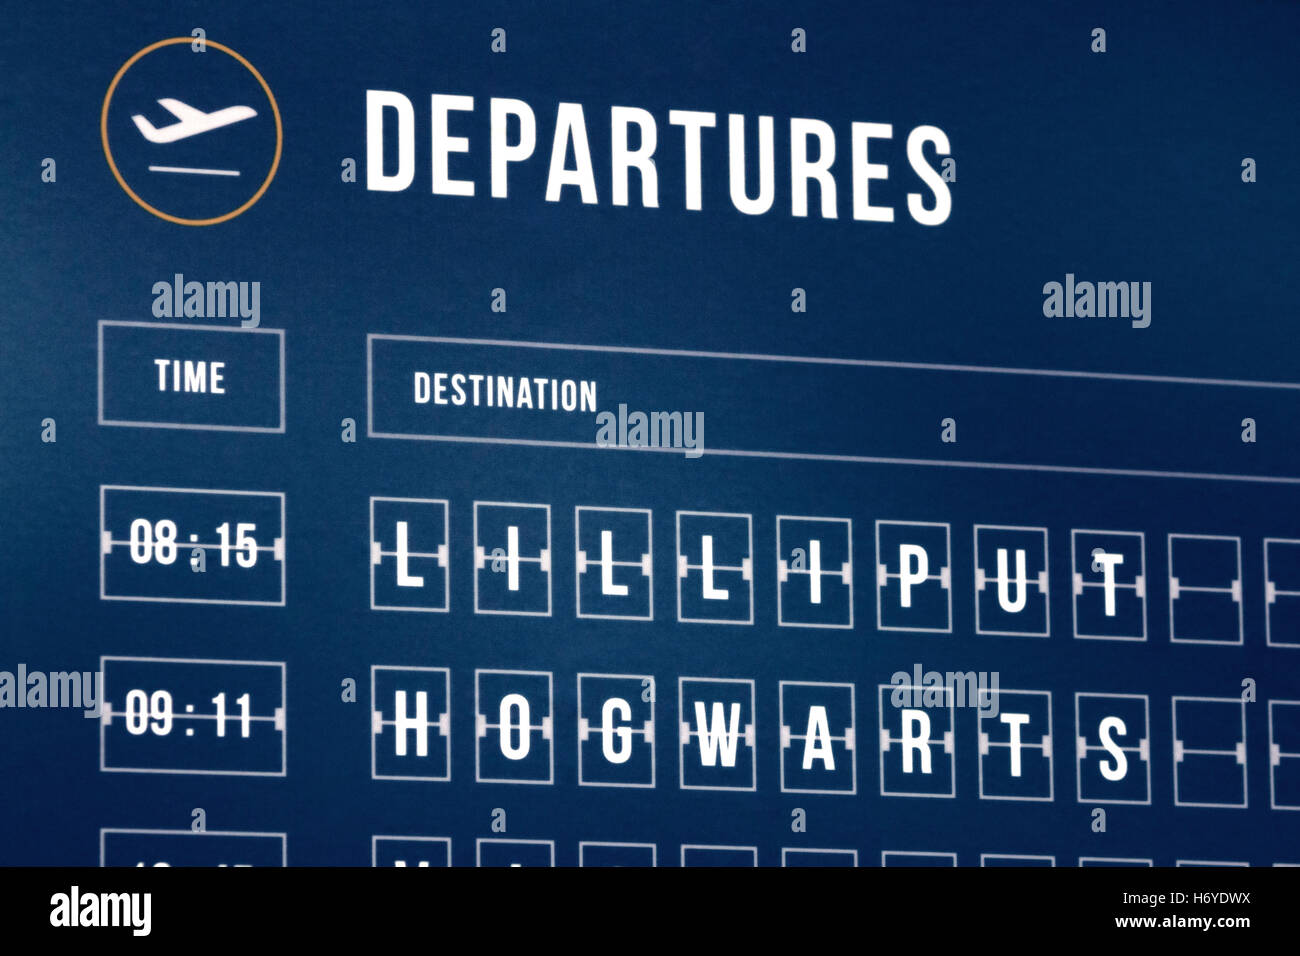 Un aeroporto calendario partenze con luoghi fictional (Lilliput e Hogwarts) Foto Stock